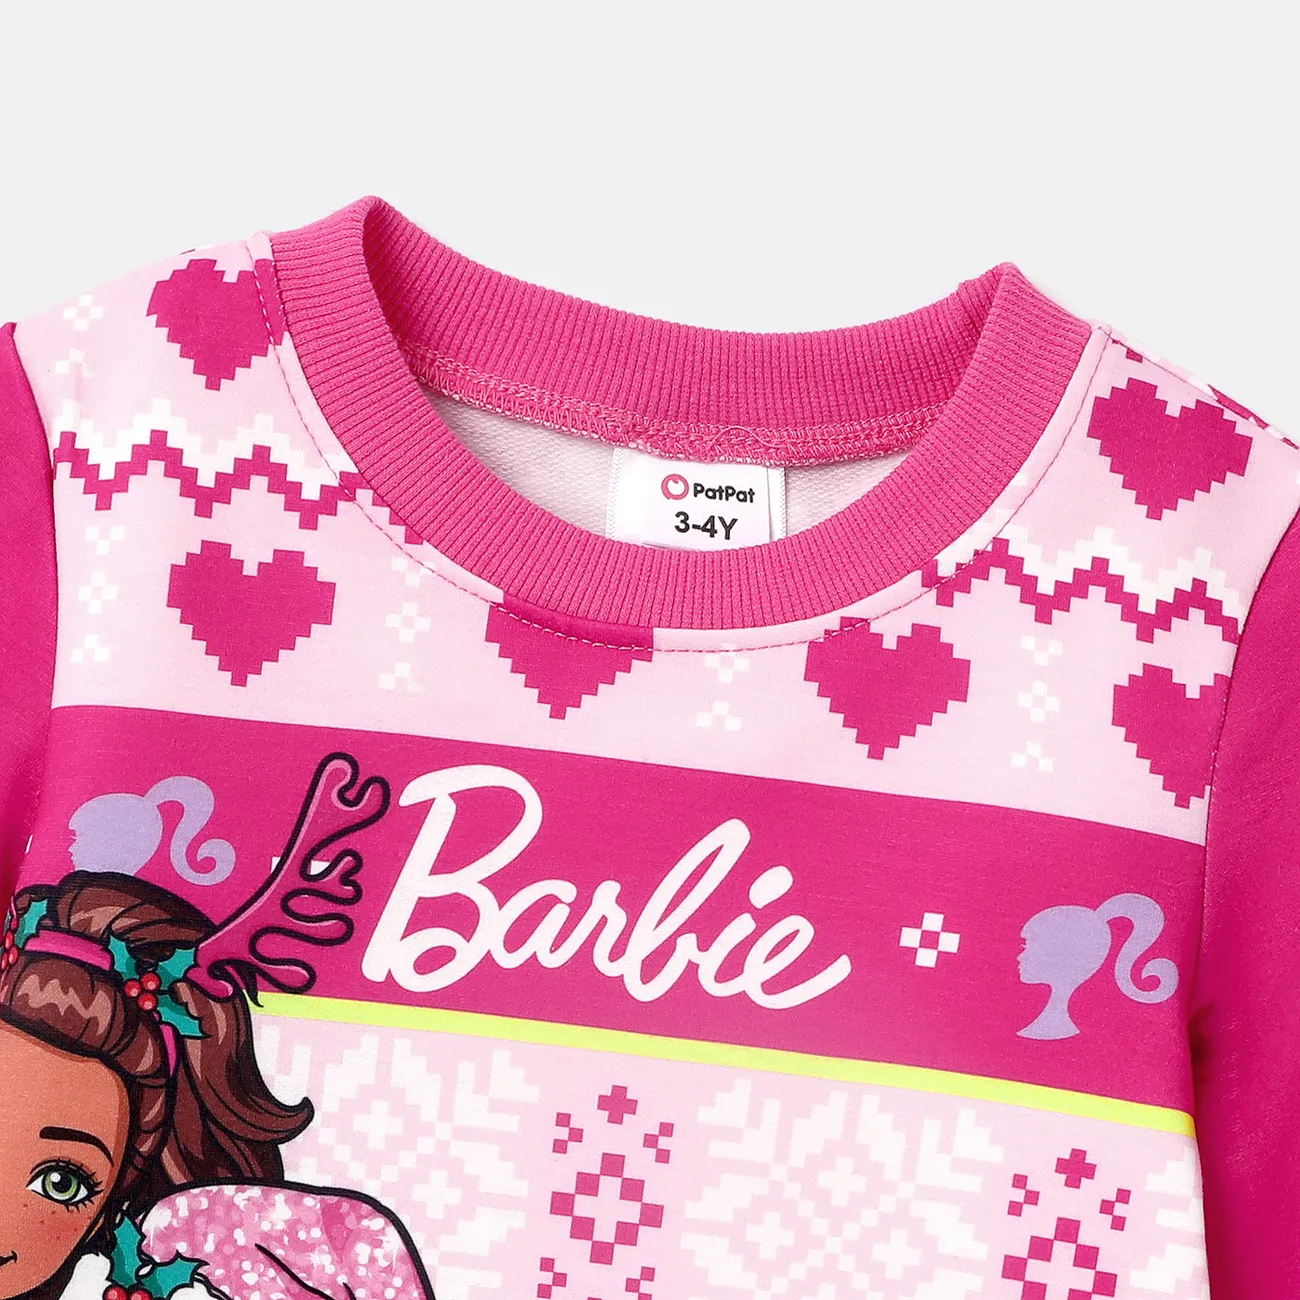 Barbie Natale Bambino piccolo Ragazza Infantile Vestiti Rosa Acceso big image 1